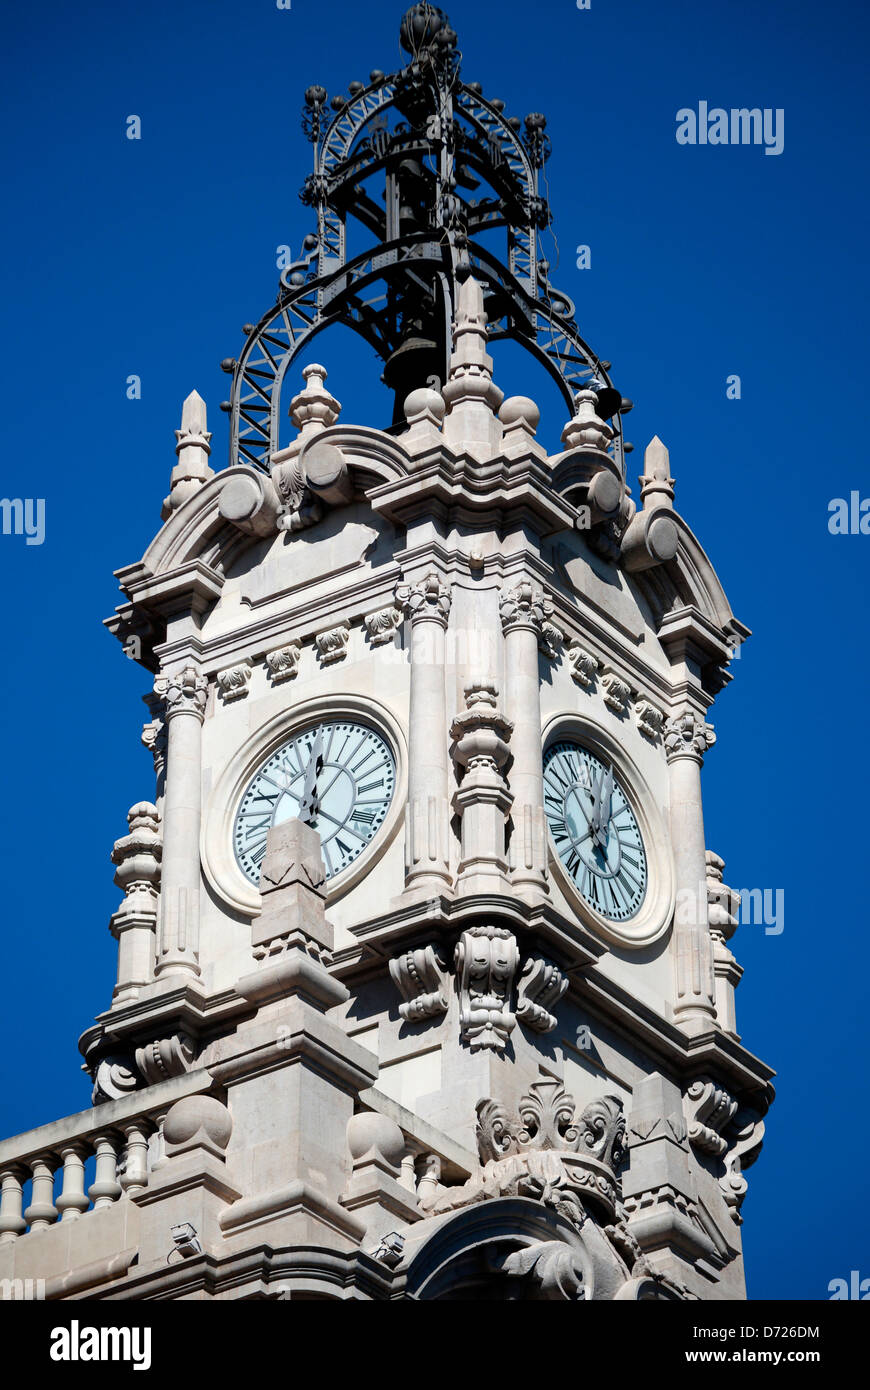 Ayuntamiento de Valencia, torre del reloj Stock Photo